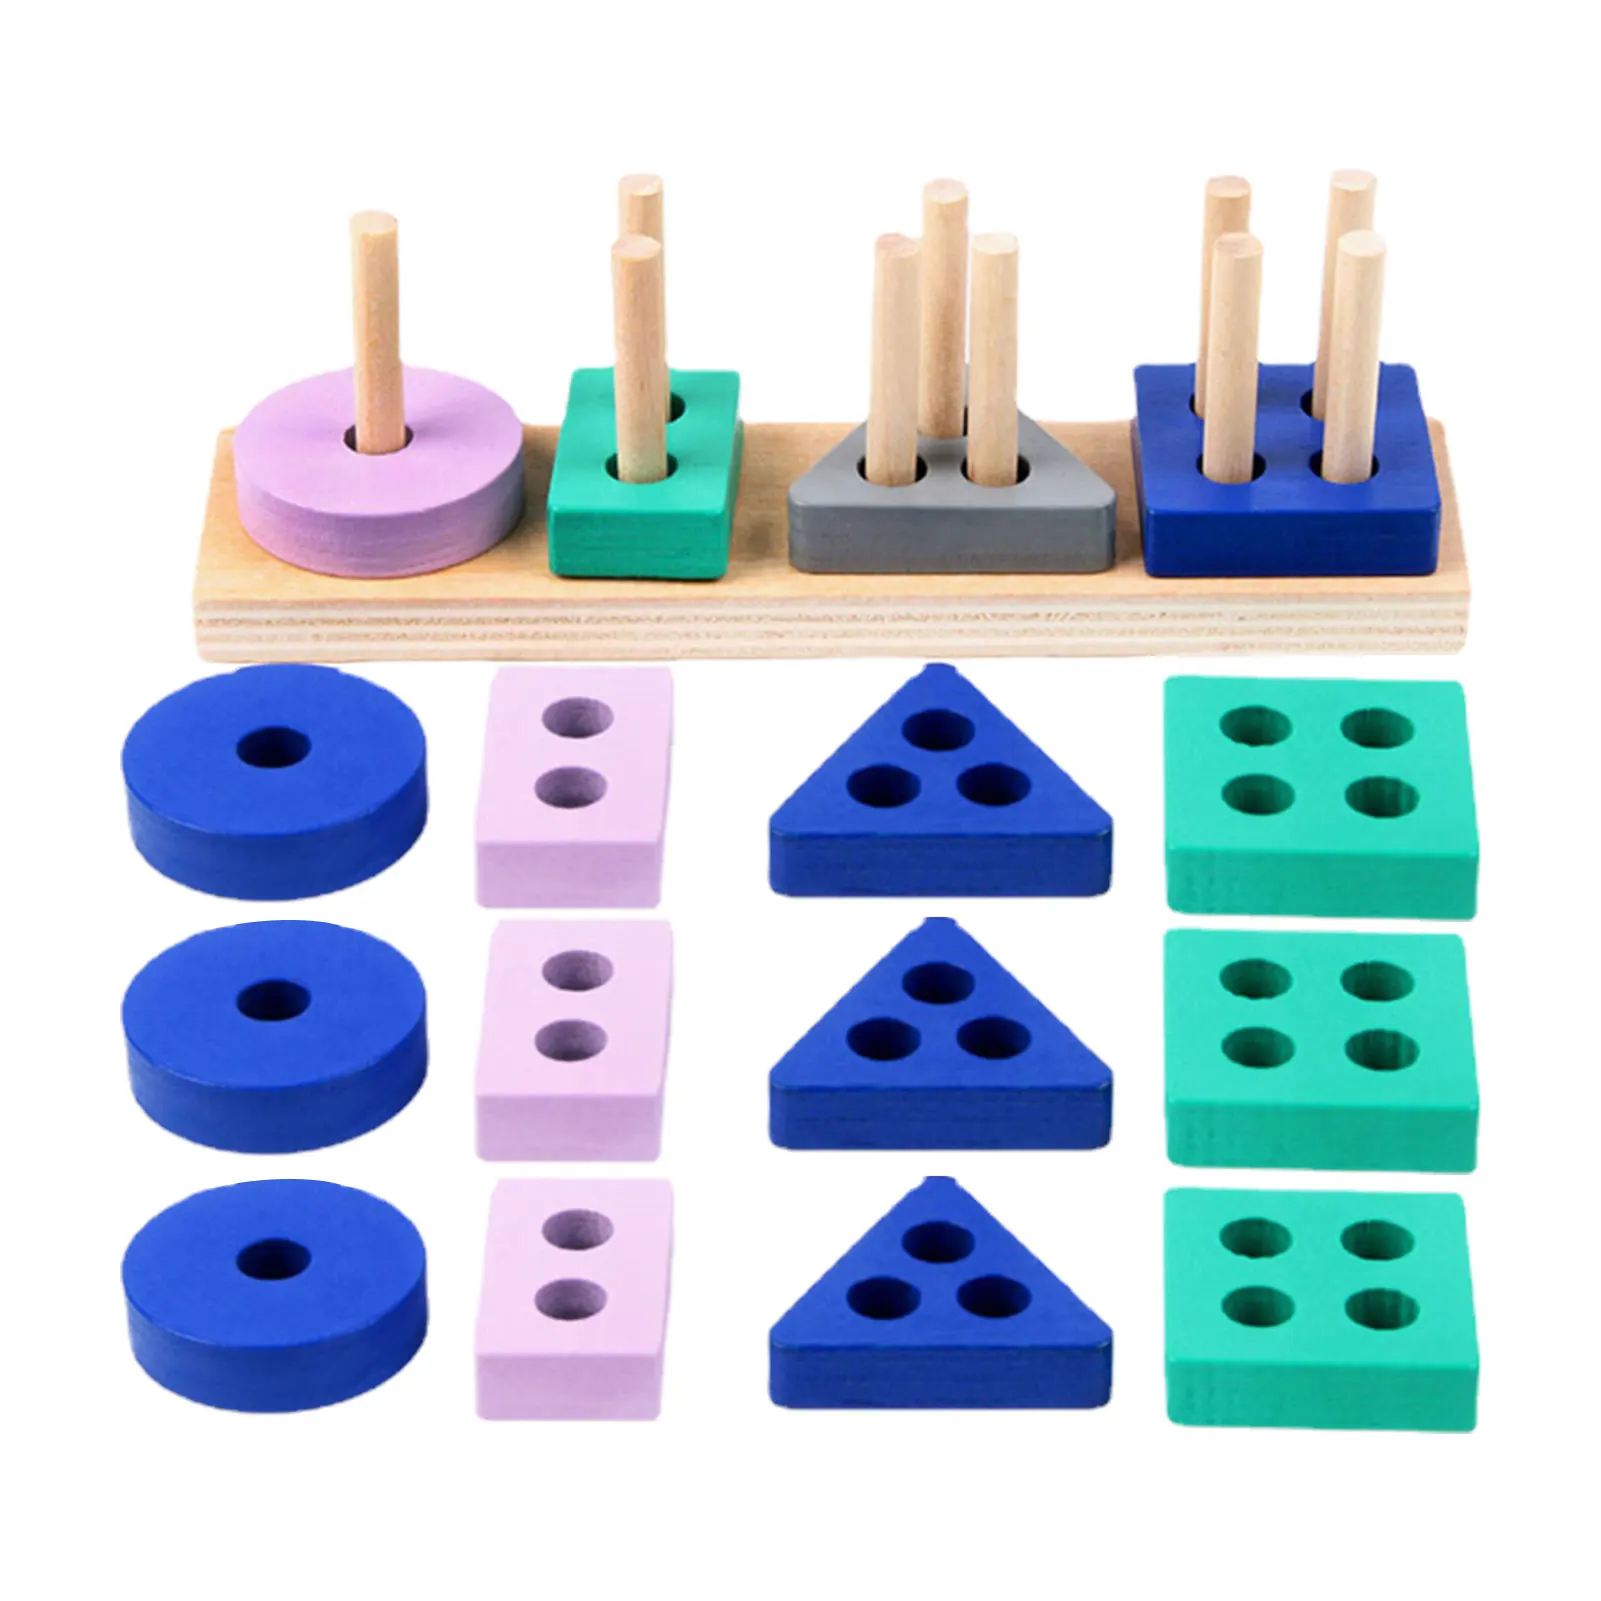 

Набор деревянных строительных блоков, безопасные гладкие штабелируемые блоки геометрической формы, интерактивные обучающие игрушки для дошкольного обучения